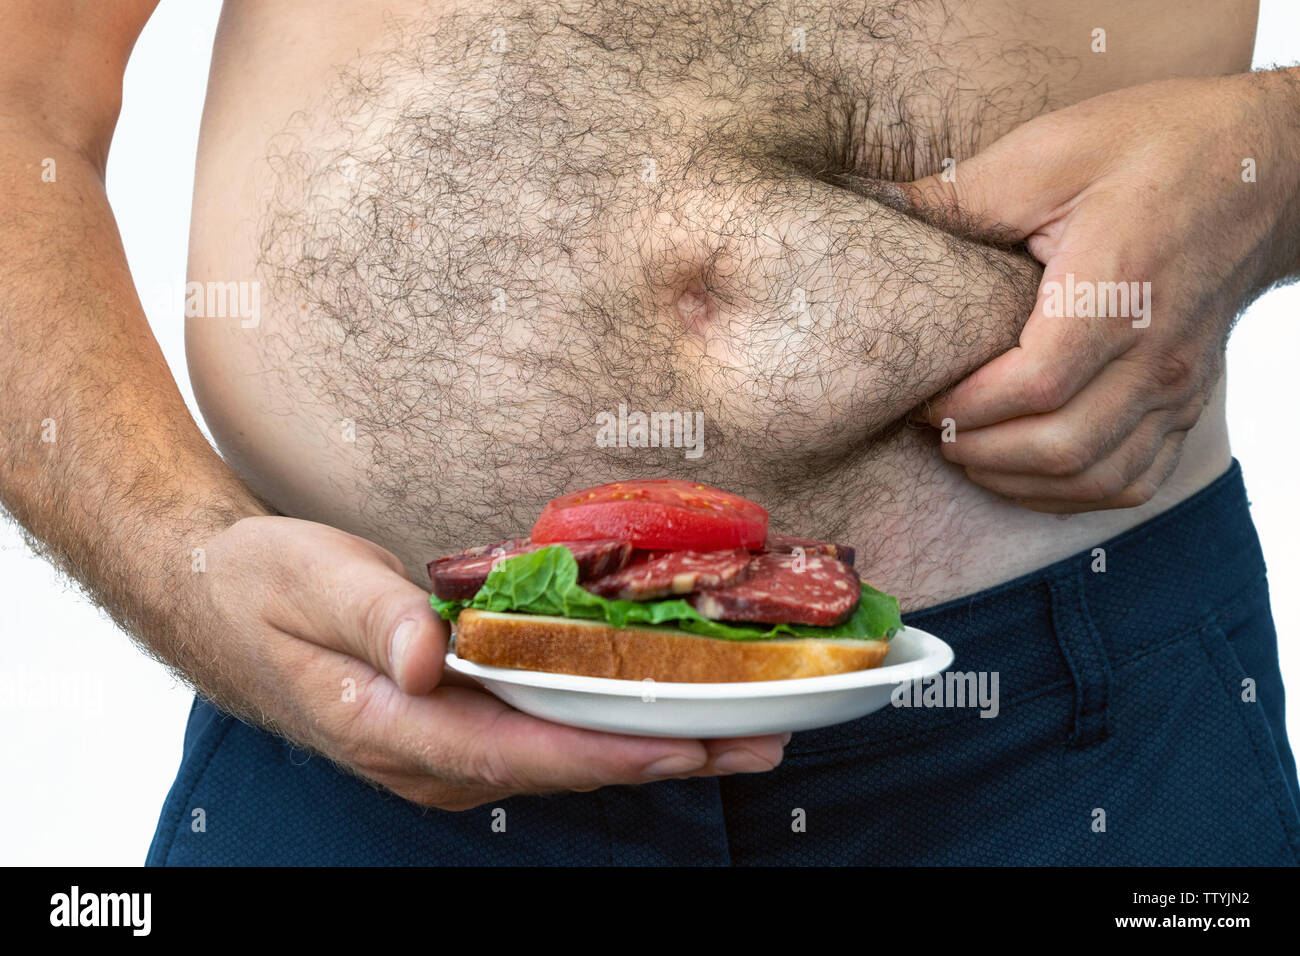 Menschen mit Übergewicht. symbolische Foto für Bier Bauch, erfolglosen Diäten und Ernährung die falschen Nahrungsmittel. Gewicht-verlust-Konzept. Enge T-Shirt. Stockfoto